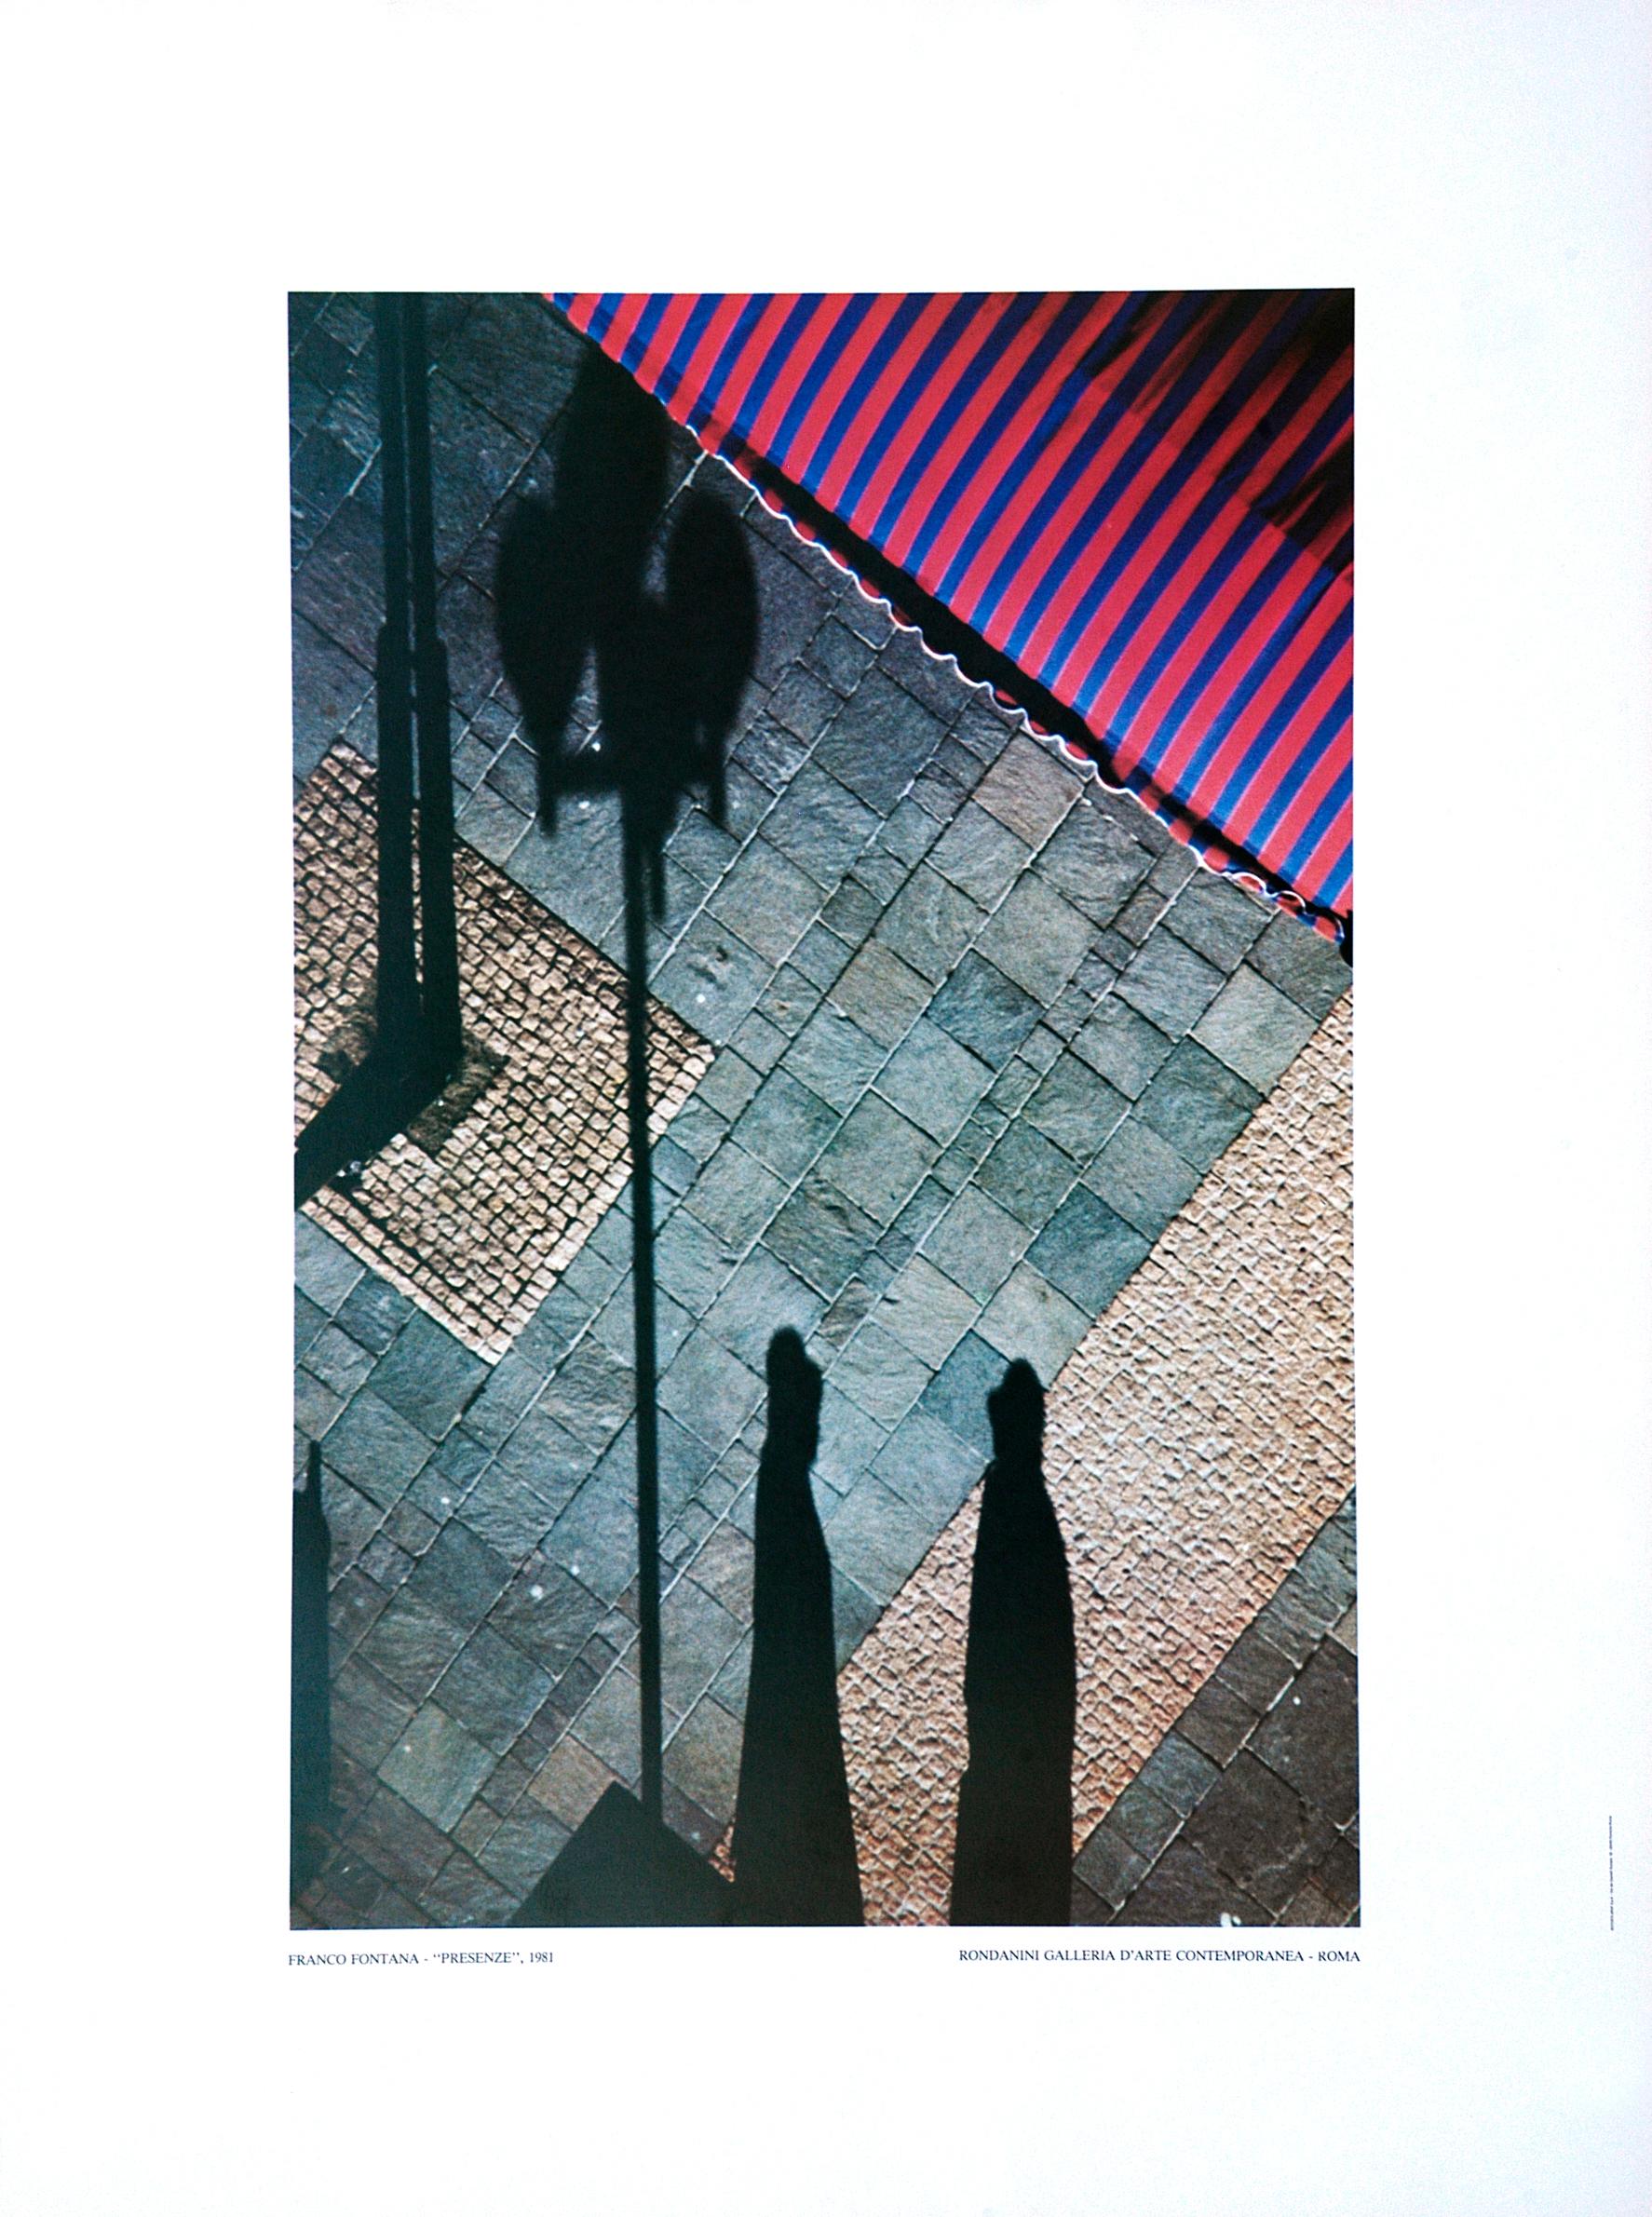 Presenze est une estampe réalisée par Franco Fontana, en 1981.

Impression offset. Rondanini Galleria D'arte Contemporanea - Roma.

Affiche en couleur d'après une photographie de Franco Fontana (Modène, 1933), l'un des plus célèbres photographes